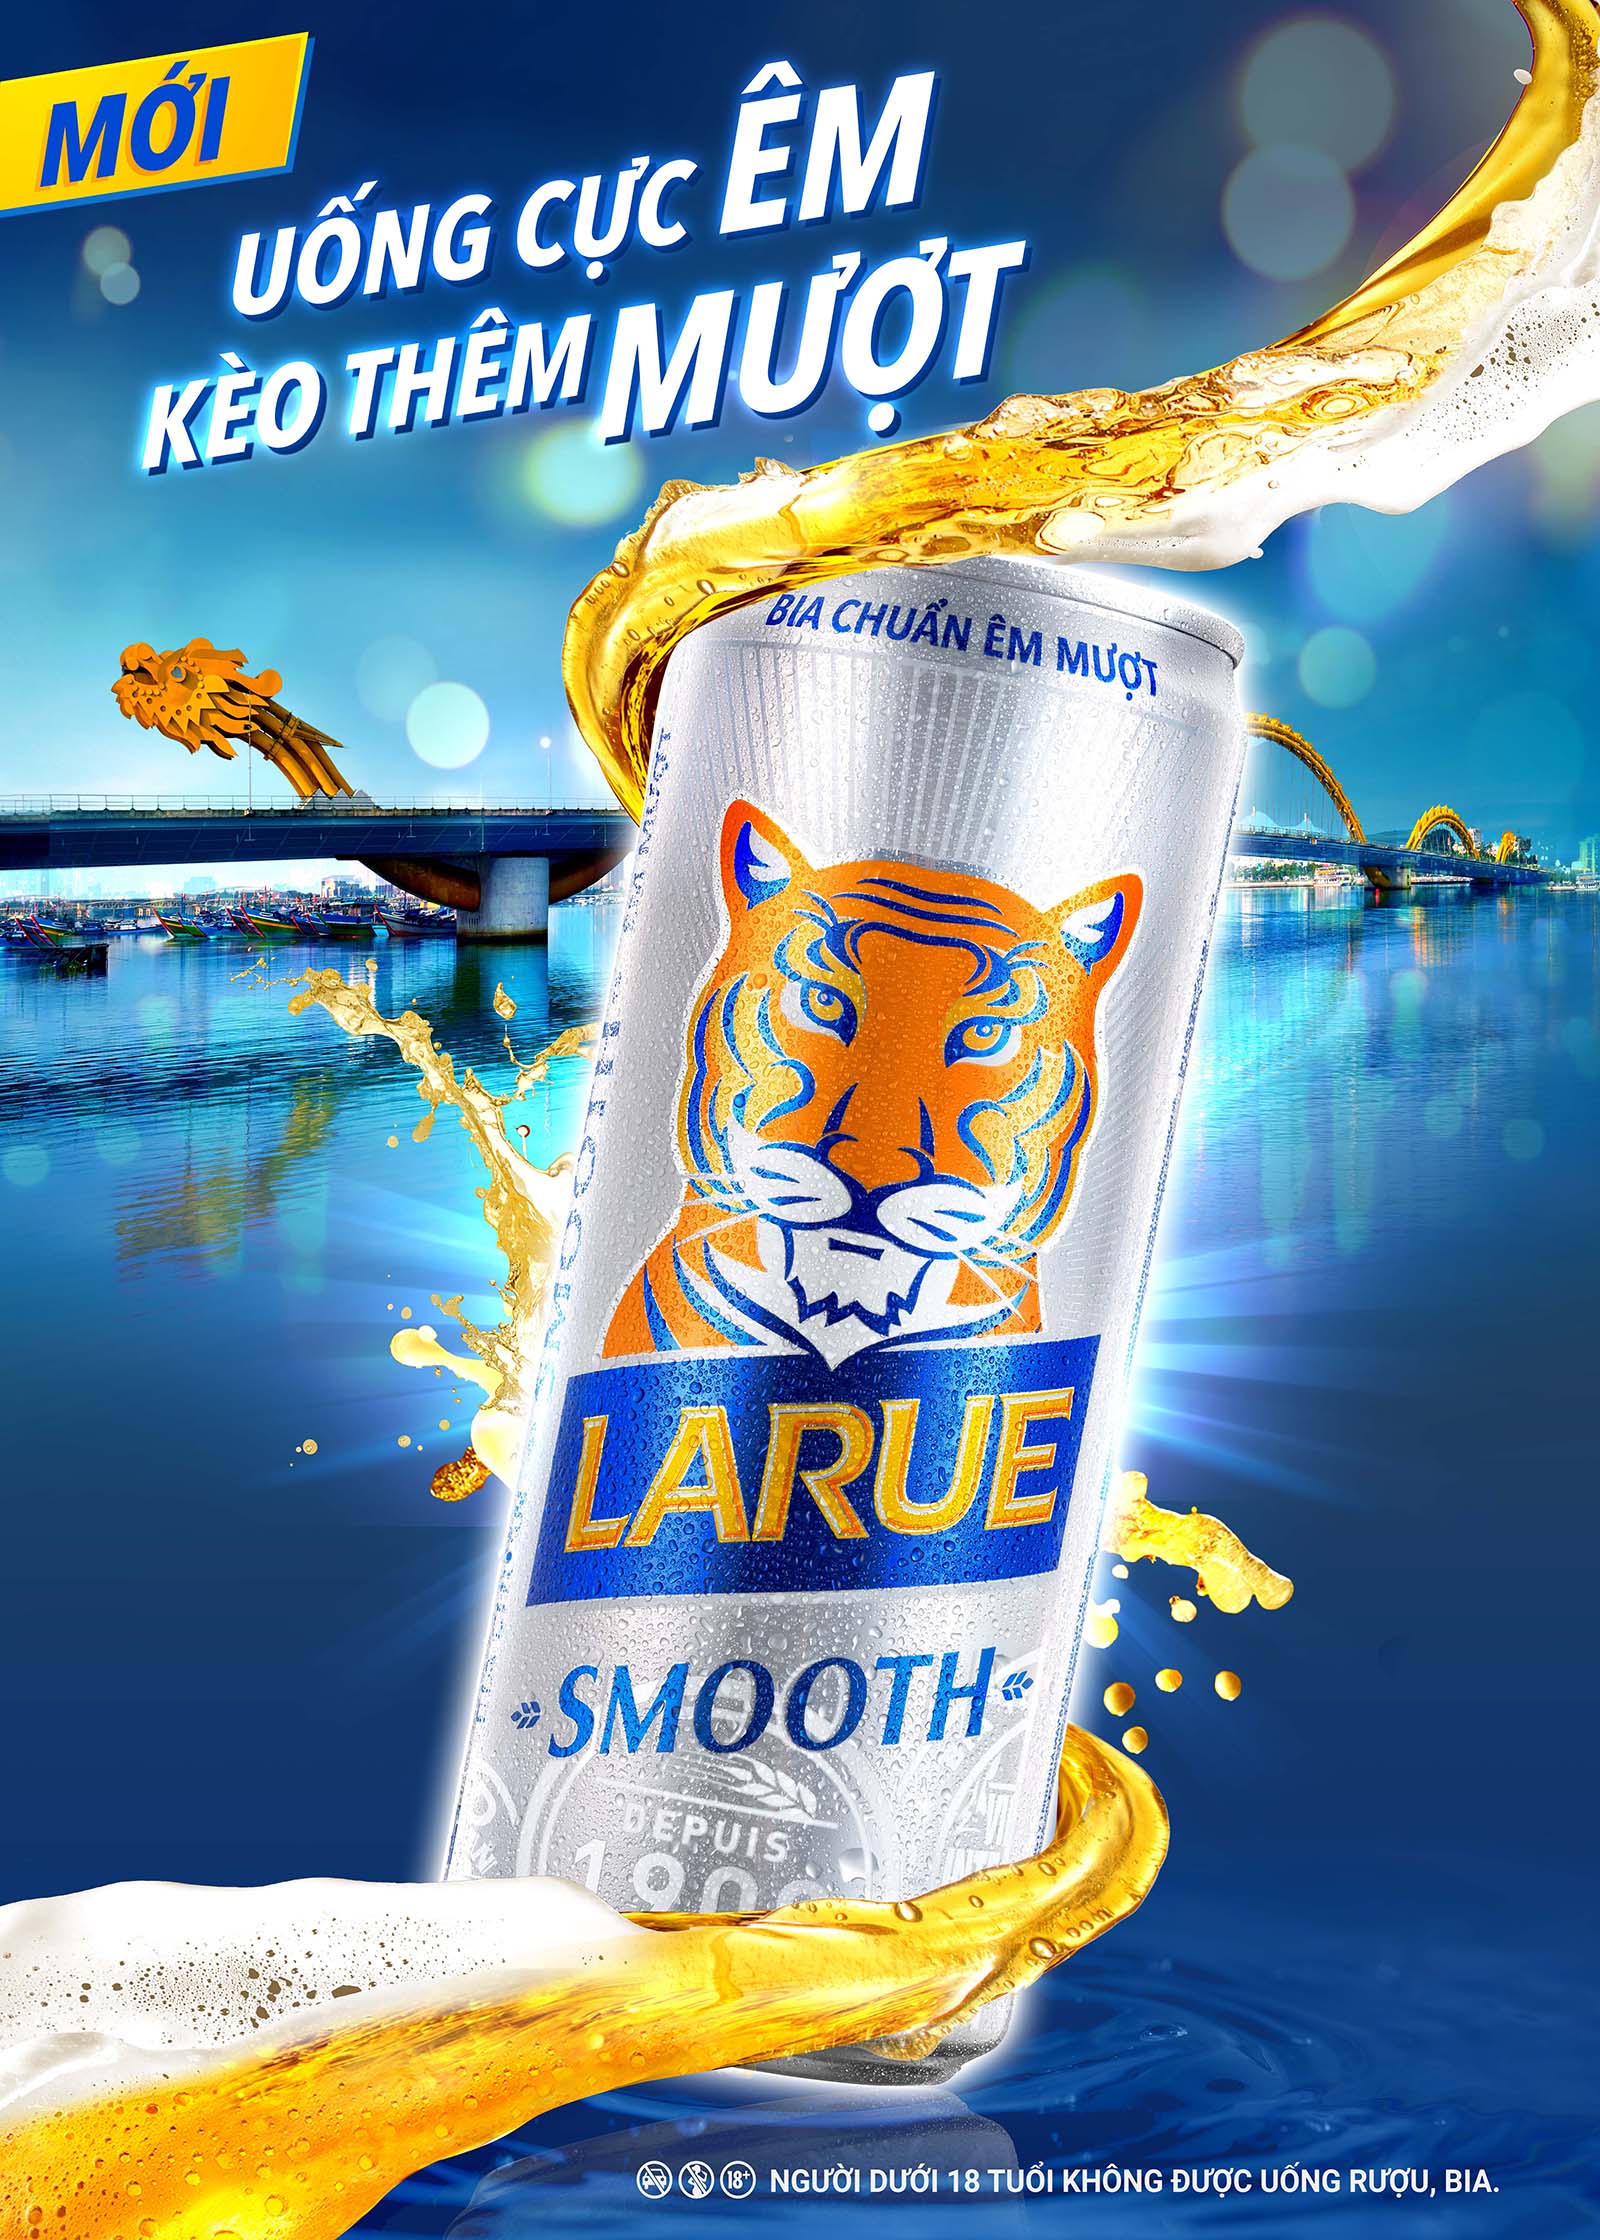 HEINEKEN Việt Nam ra mắt sản phẩm Larue Smooth mới, vị êm mượt sảng khoái và chất lượng đạt chuẩn HEINEKEN toàn cầu